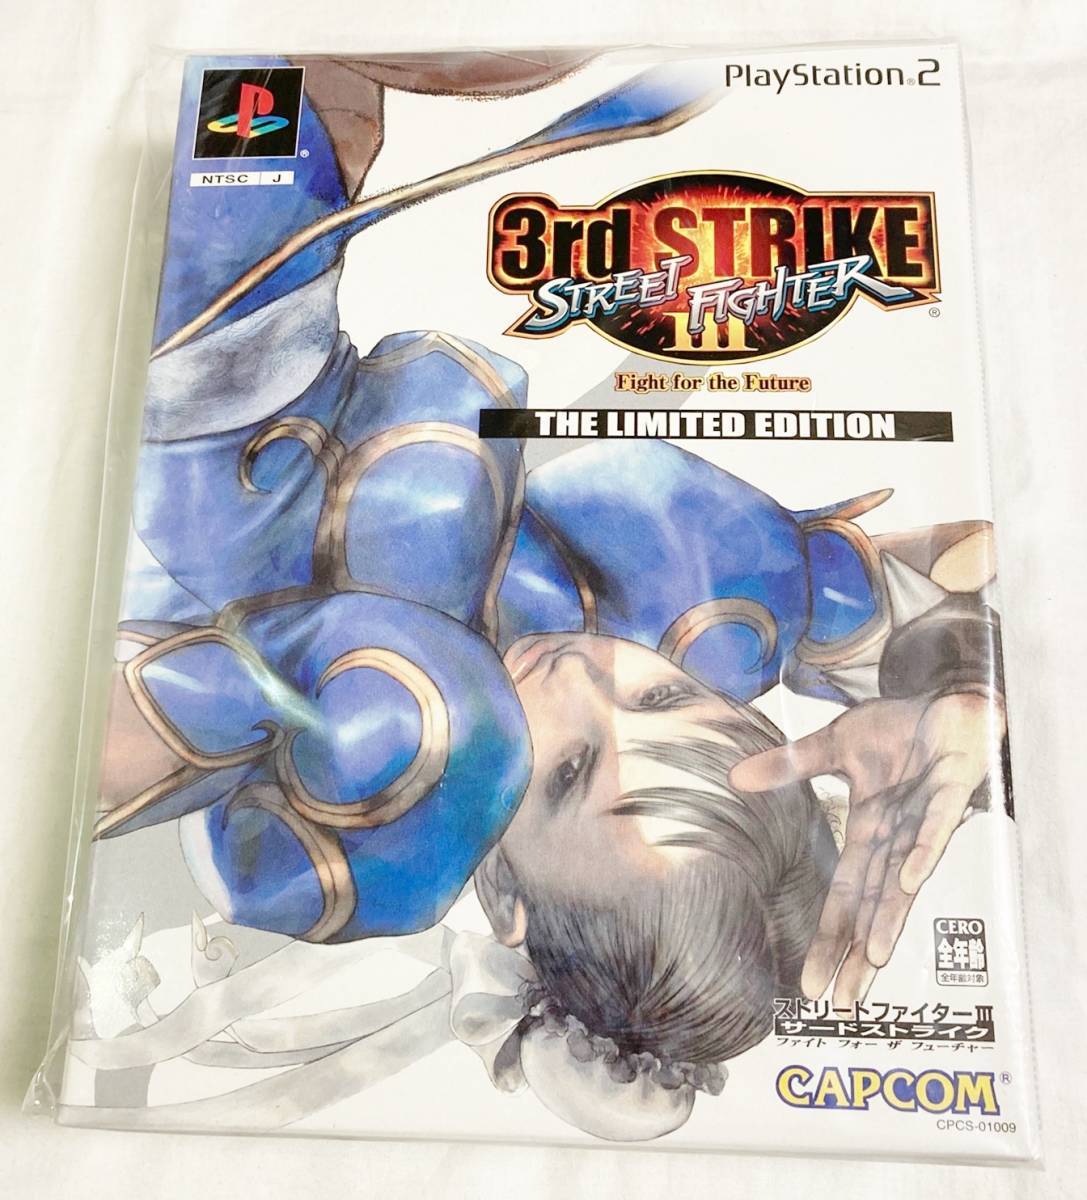 激レア! 未使用未開封品! ストリートファイターIII 3rd STRIKE [The Limited Edition] PS2 [匿名配送] ストリートファイター3 3rd 限定版